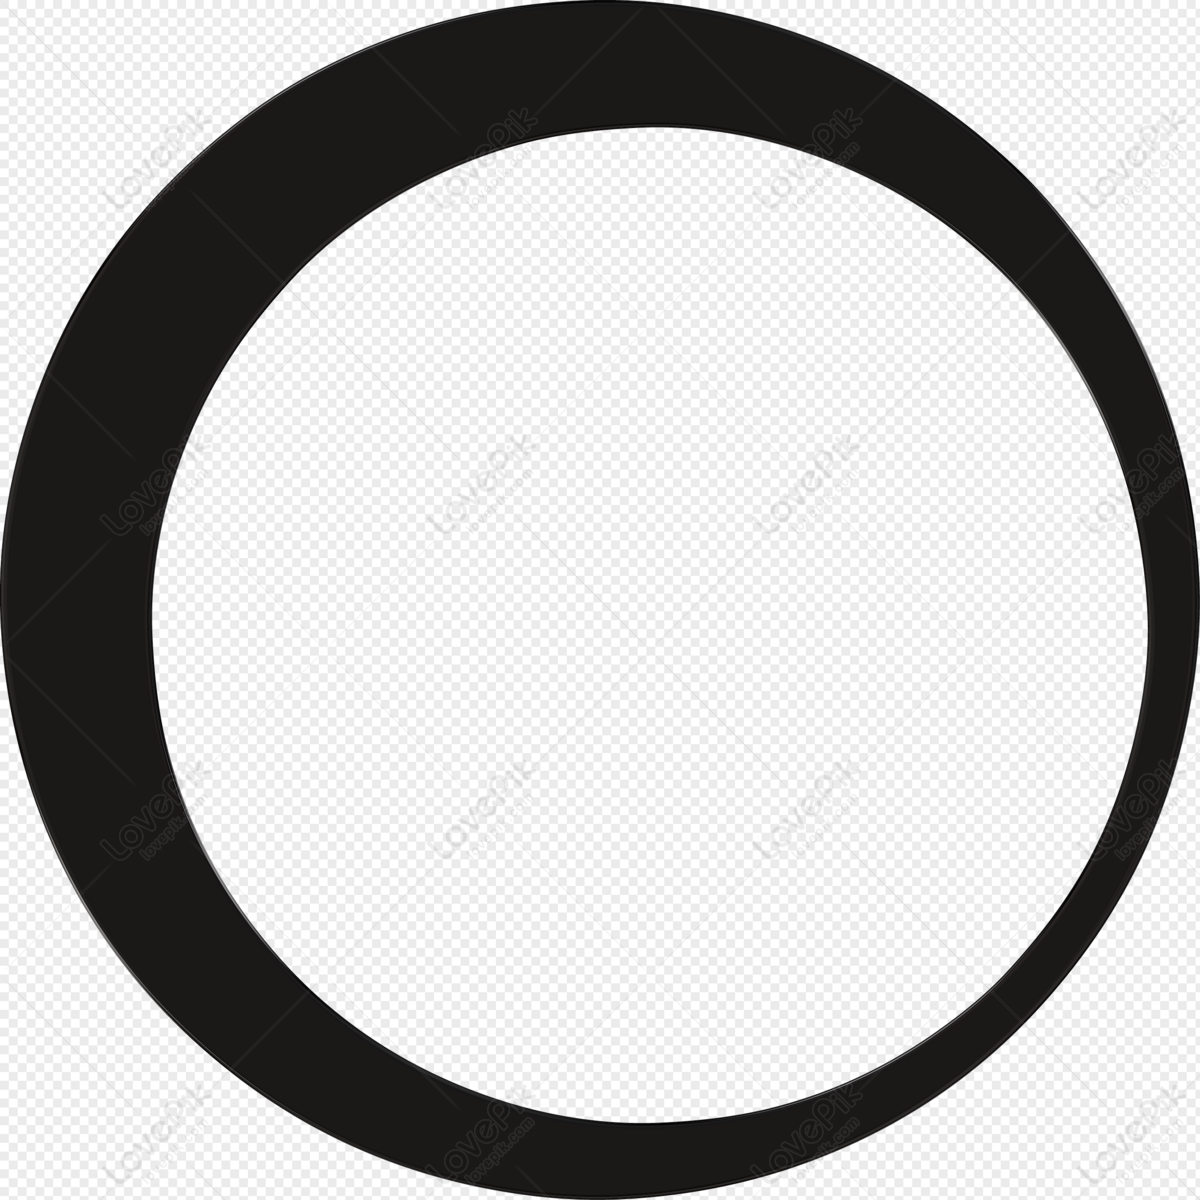 Những vòng tròn màu đen bí ẩn luôn là điểm nhấn của mỗi tác phẩm nghệ thuật. Hãy xem đến hình ảnh này để khám phá sự huyền bí và đẳng cấp của vòng tròn màu đen như thế nào.